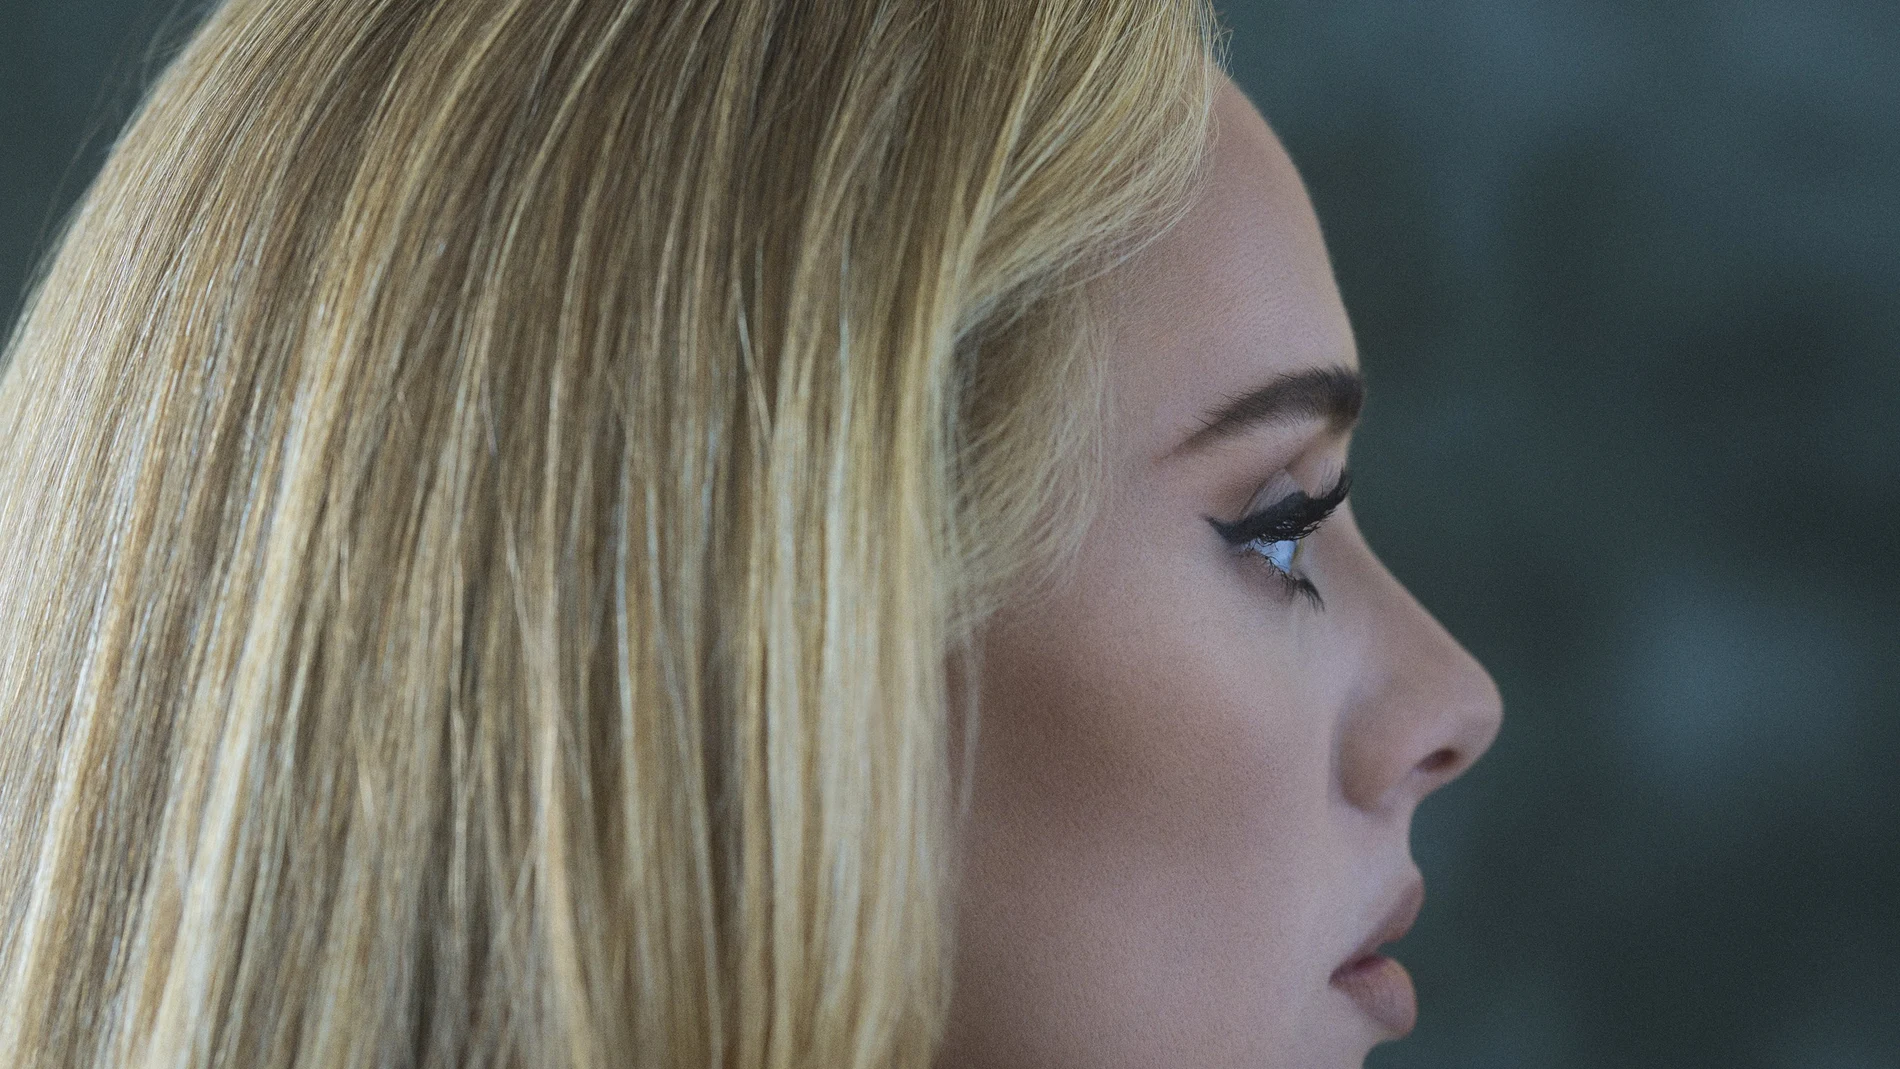 Portada de "30", el nuevo trabajo de la cantante Adele (Columbia Records via AP)